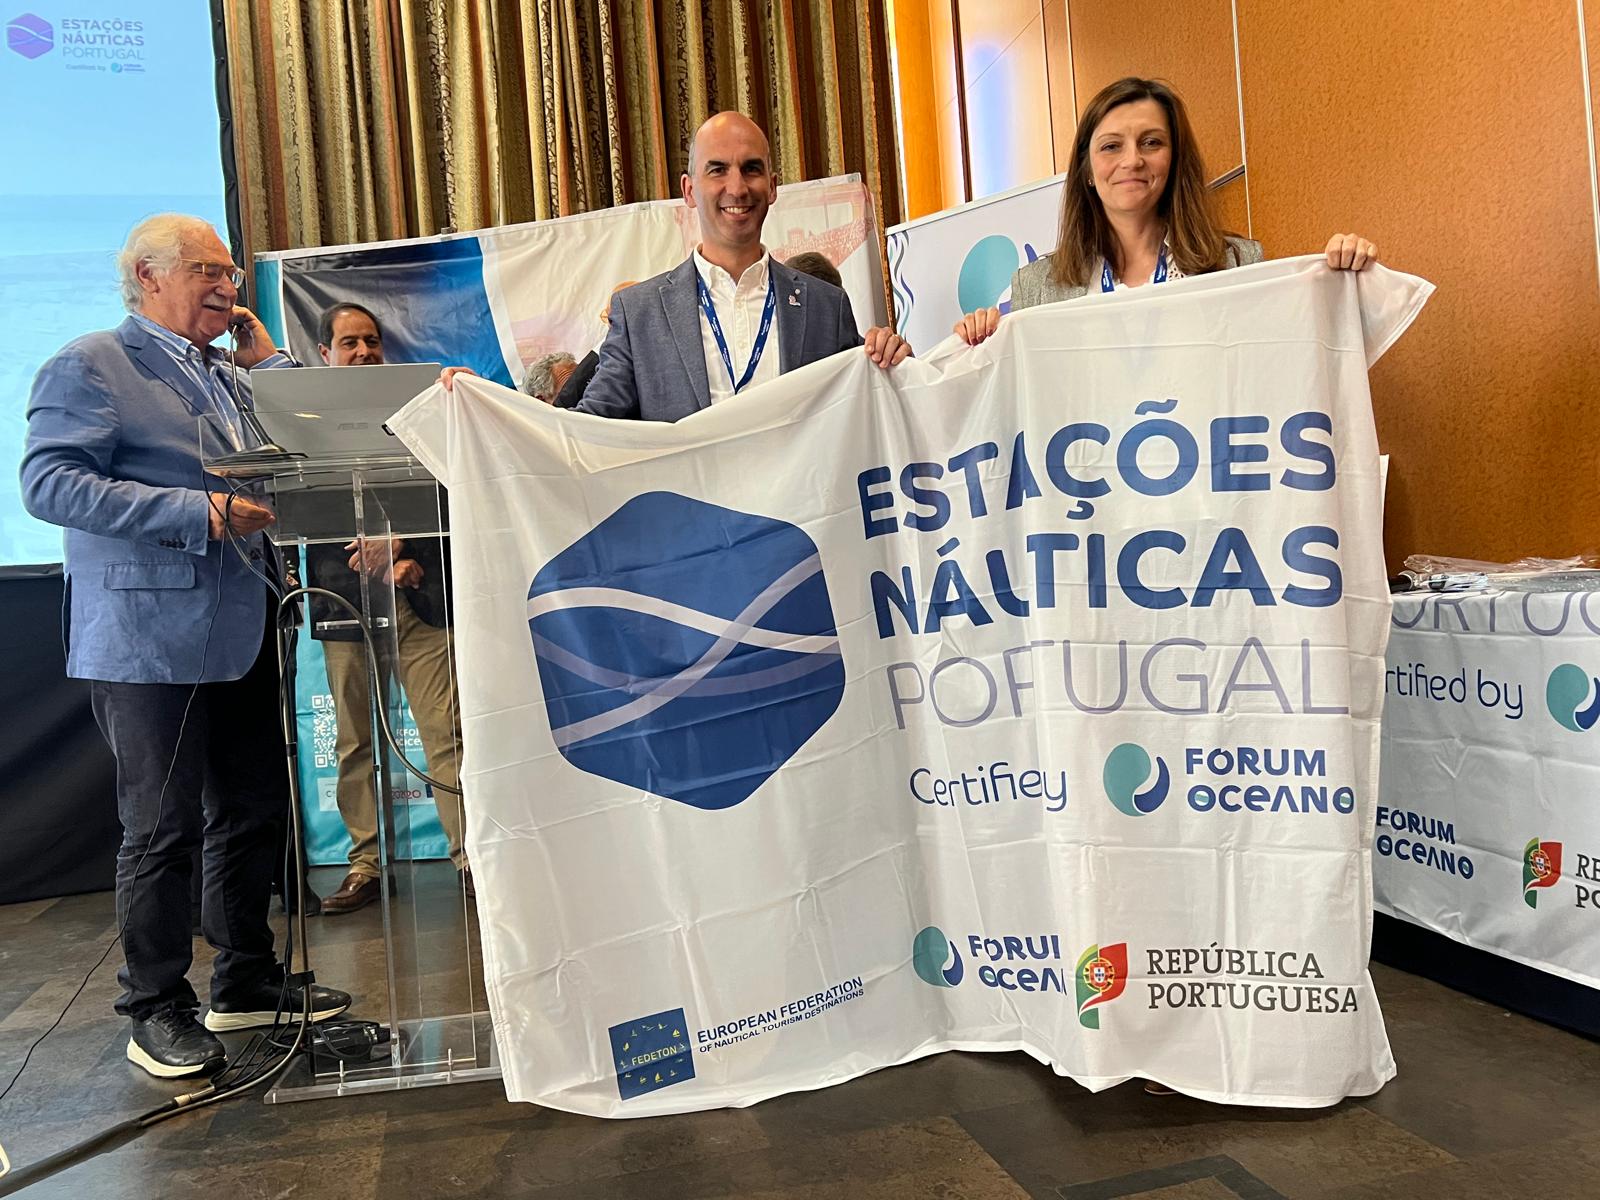 Alto Côa torna-se a 11.ª Estação Náutica certificada no Centro de Portugal